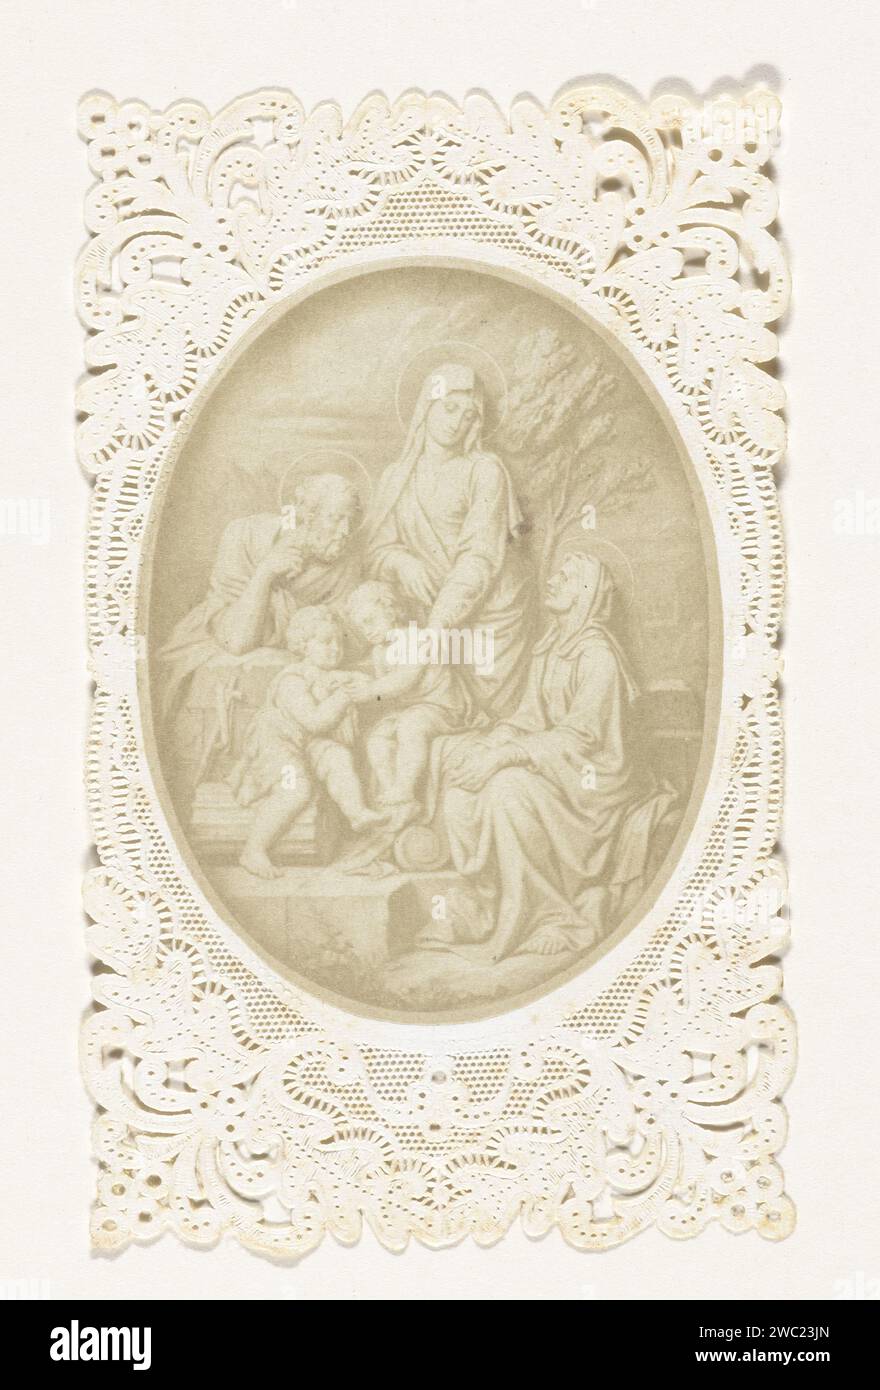 Rilievo della Sacra famiglia, Anonimo, 1850 - 1860 Fotografia Francepublisher: Paris paper albumen print Holy Family, and derived representations Foto Stock